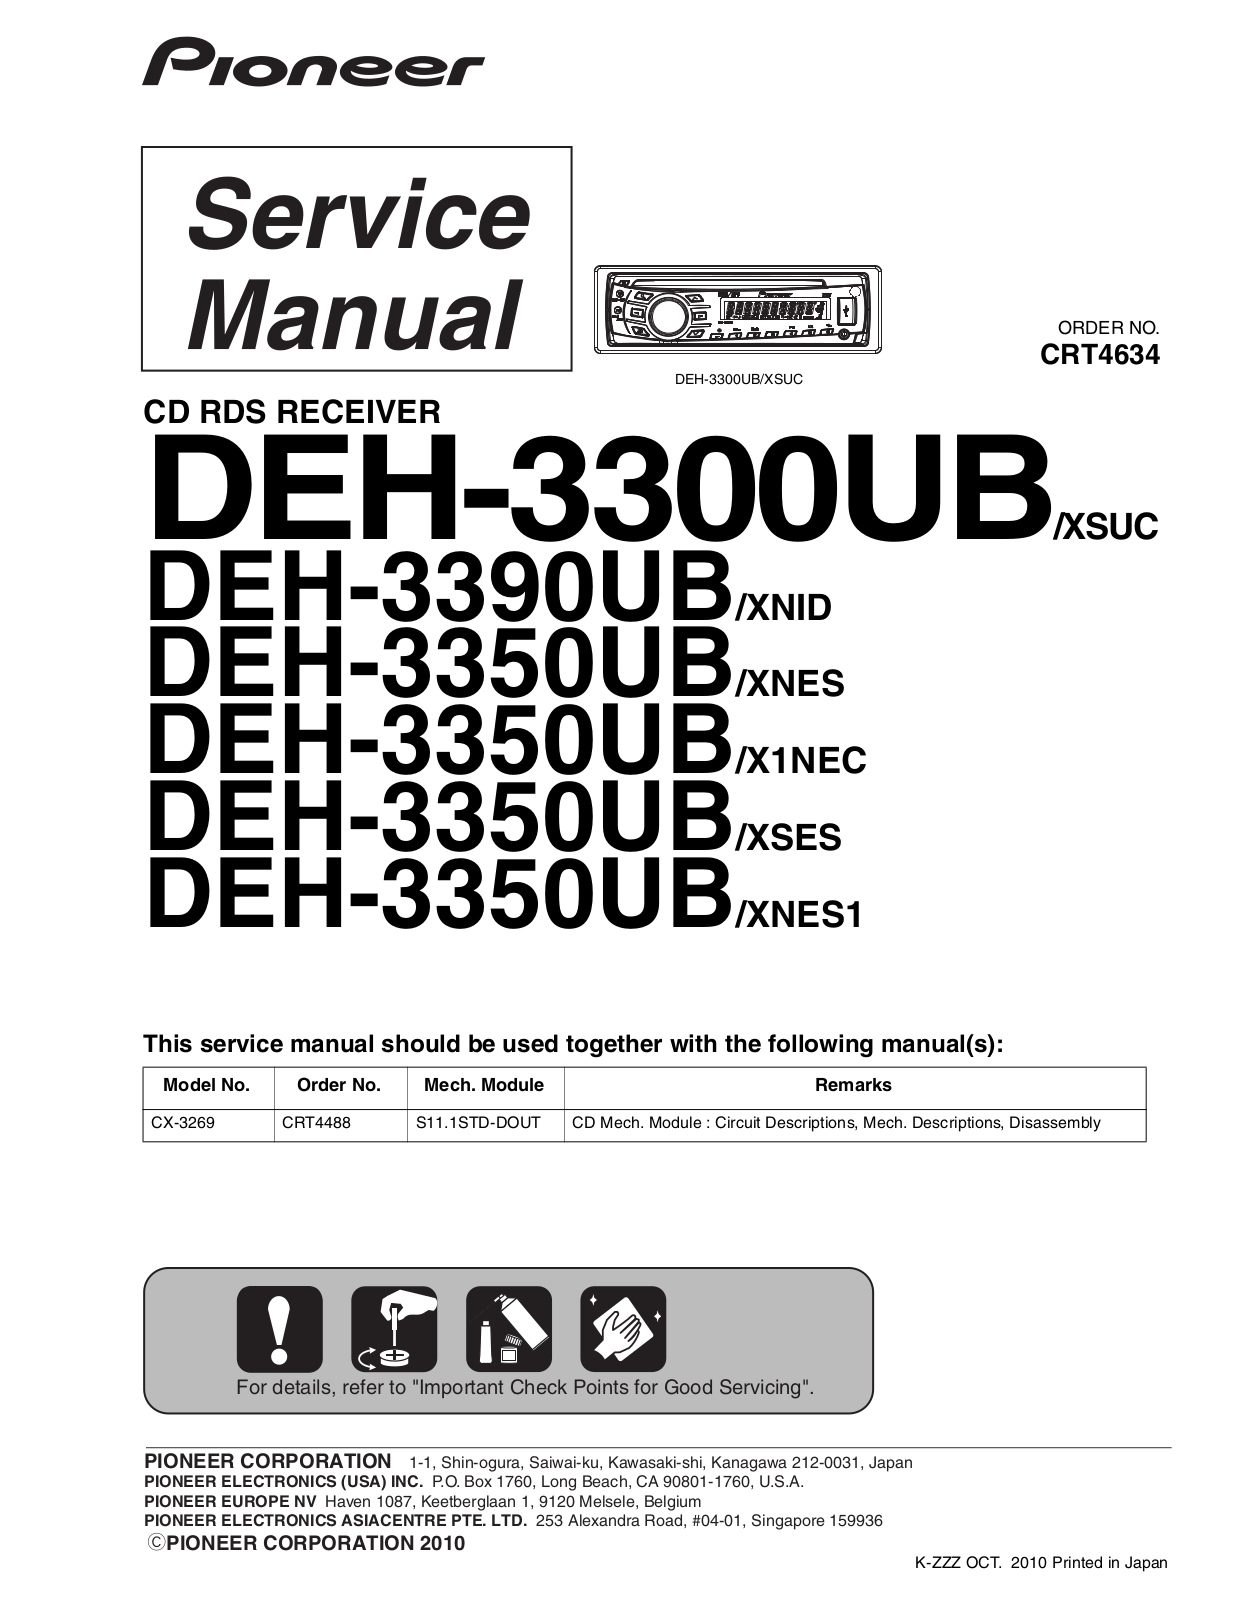 PIONEER DEH 3300UB, DEH 3350UB, DEH 3390UB Service Manual